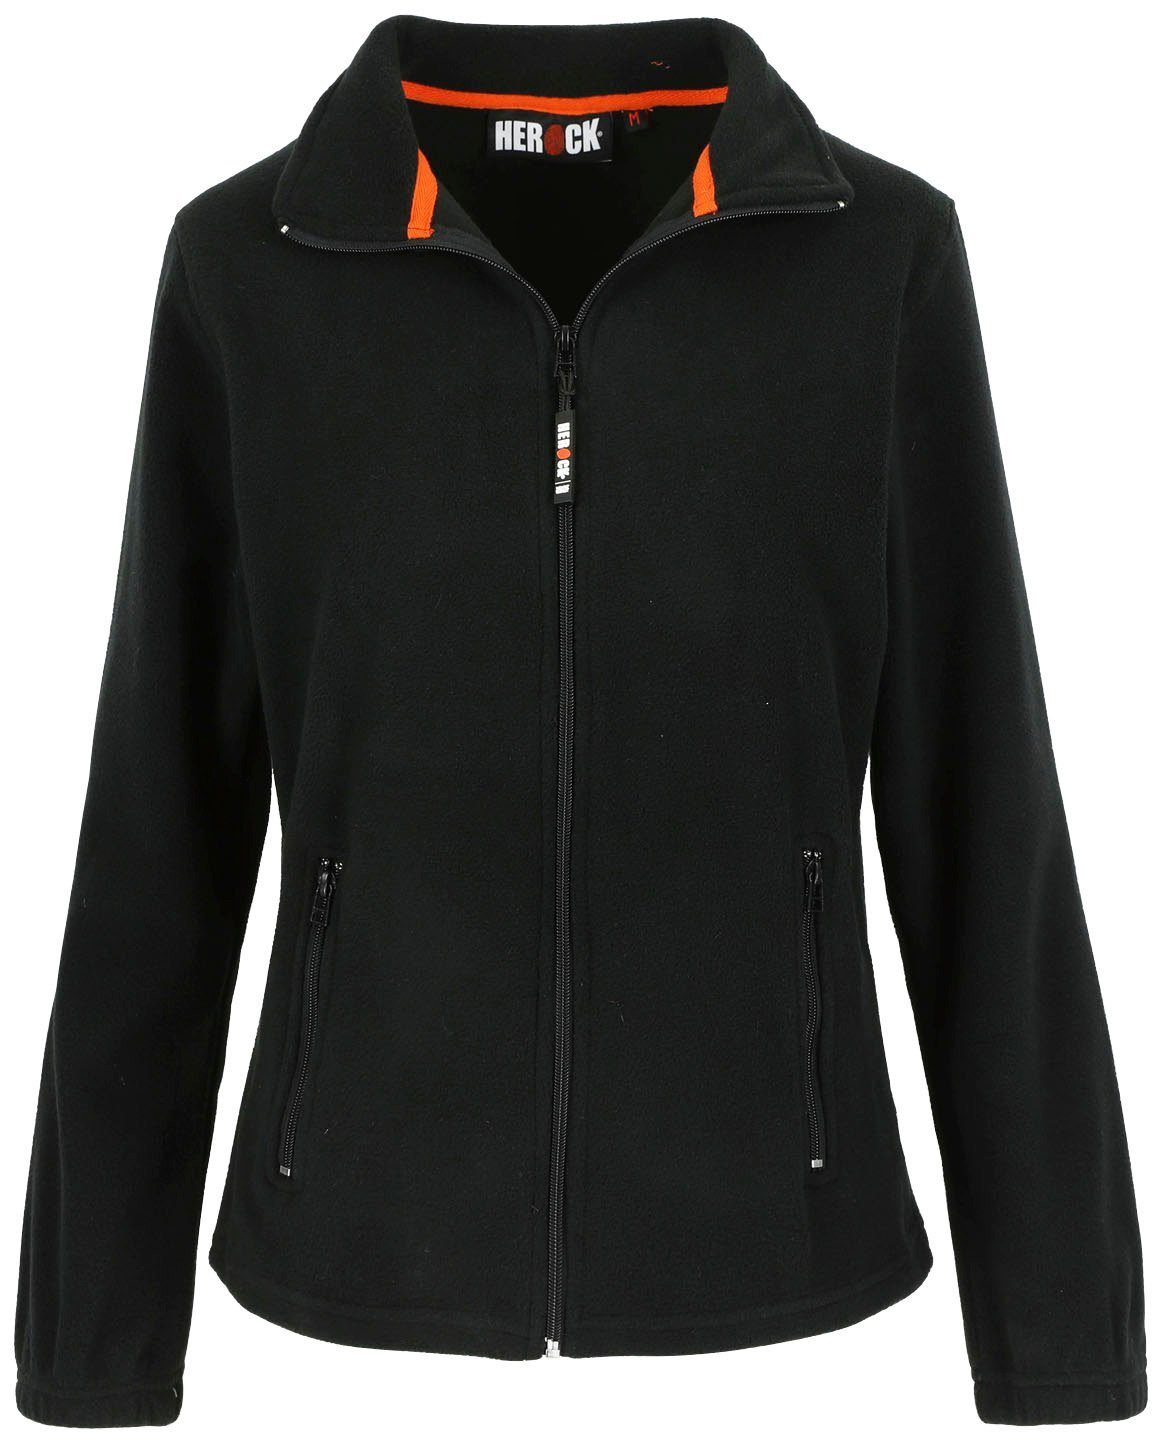 Herock Fleecejacke Deva Fleece Reißverschluss, warm, leicht und angenehm Damen Jacke Mit langem 2 Seitentaschen, schwarz